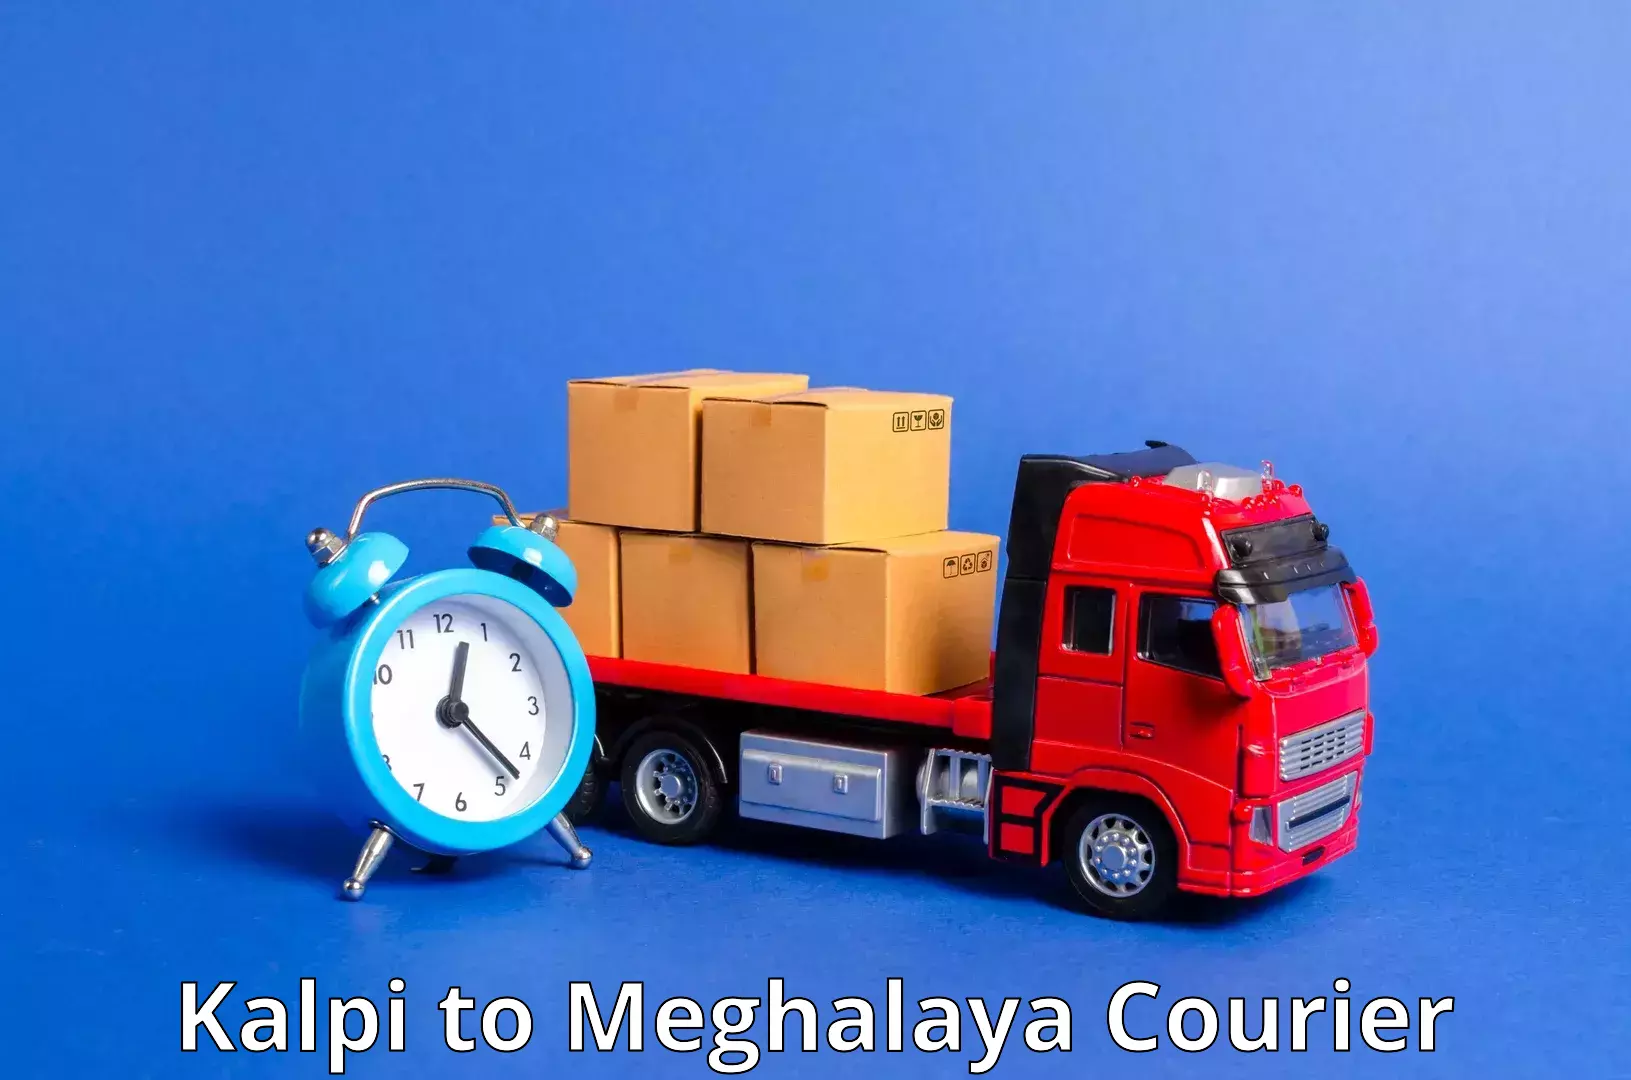 Versatile courier options Kalpi to Meghalaya